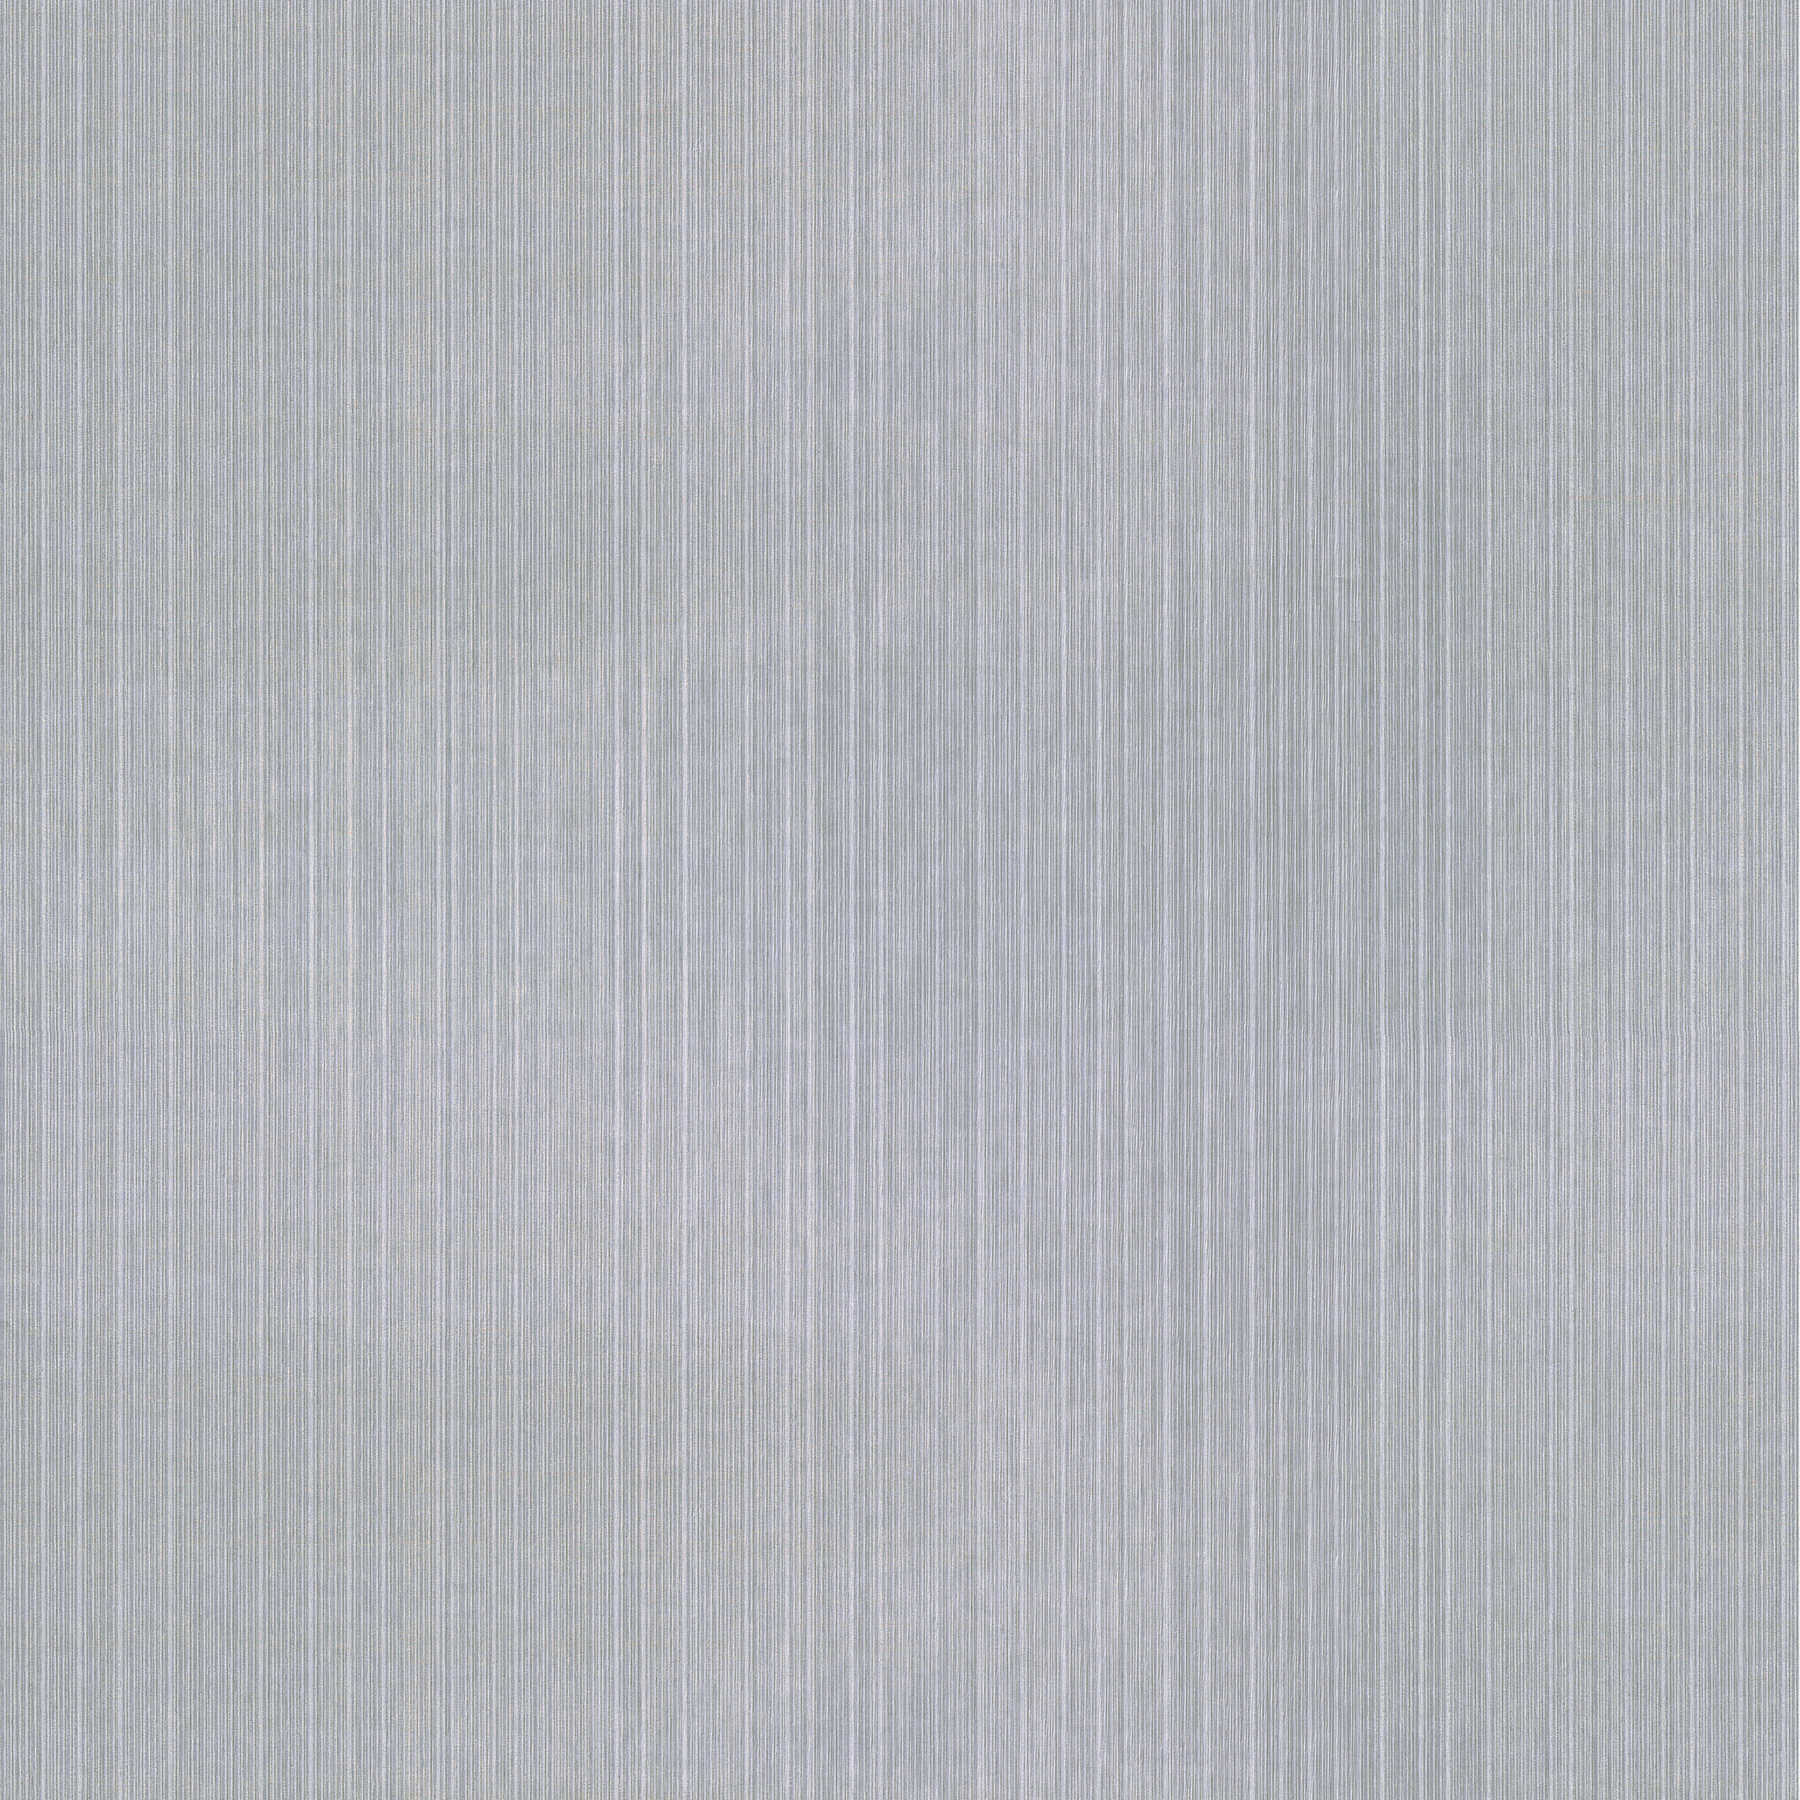 Carta da parati in tessuto non tessuto melange con accenti metallici - argento, grigio
